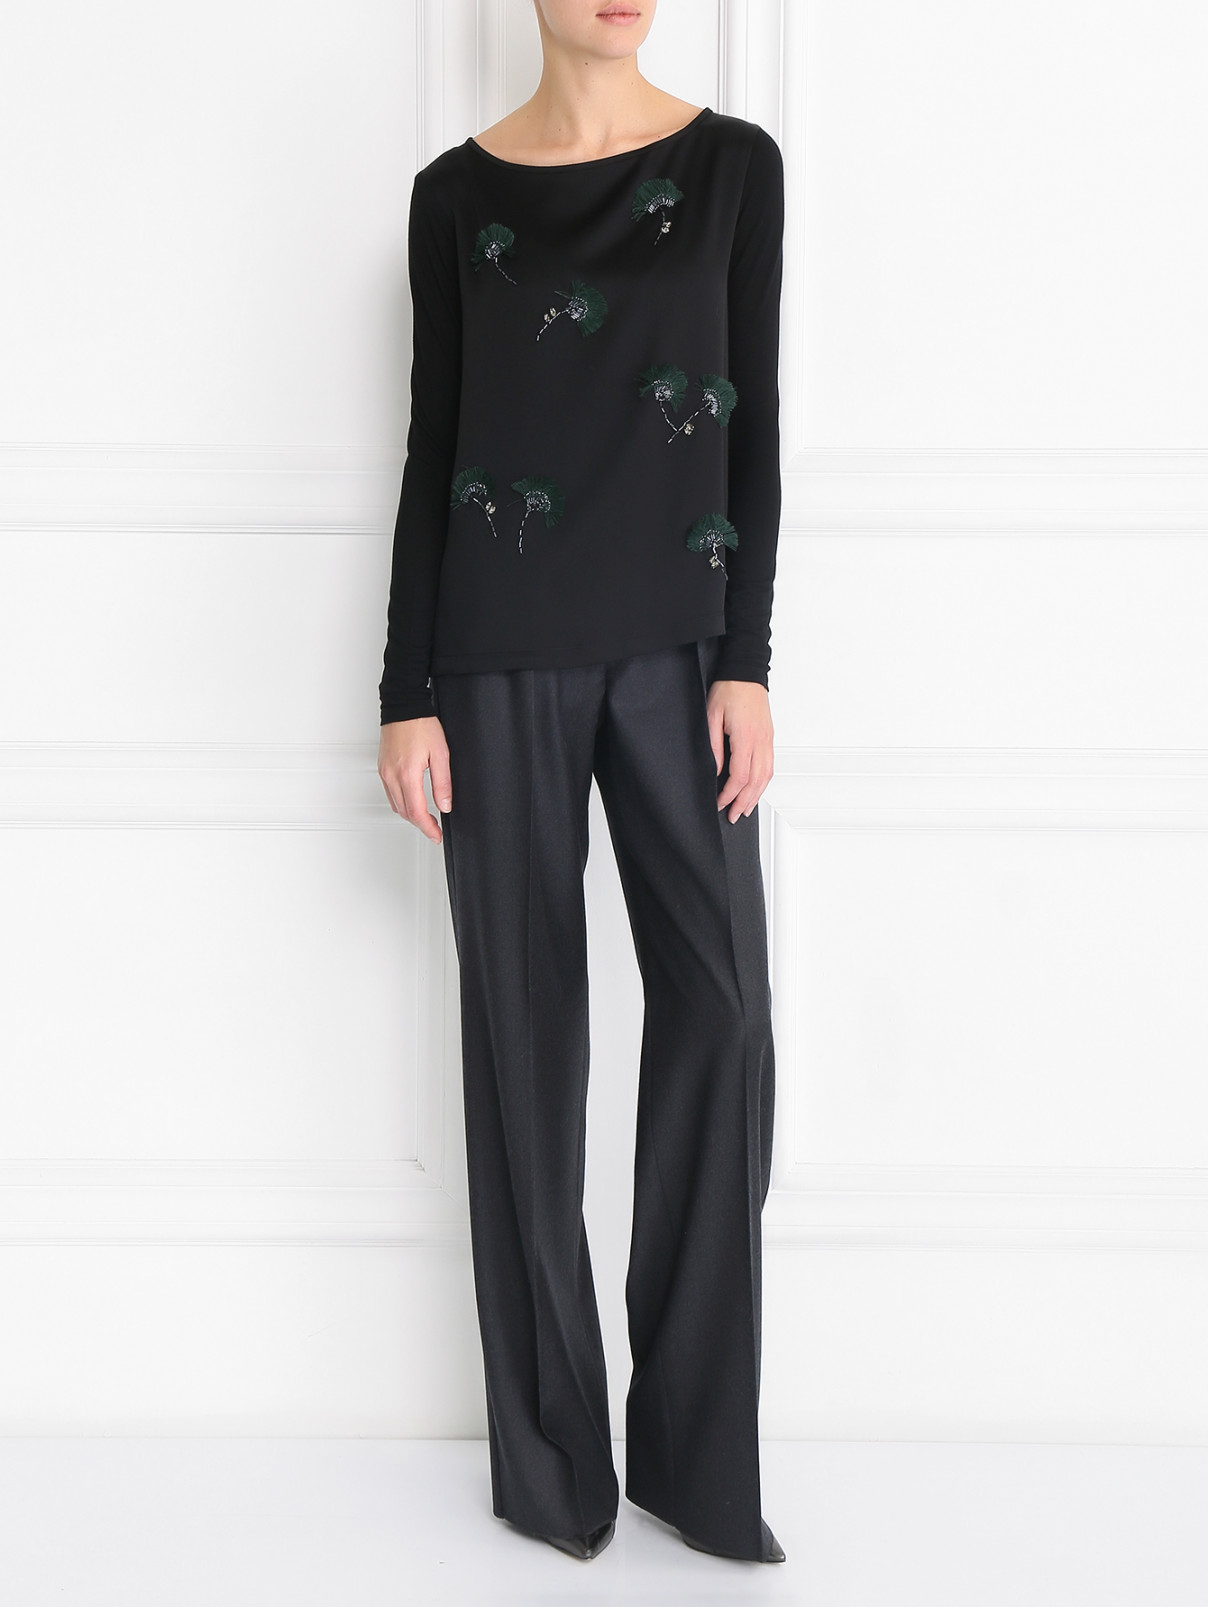 Блуза с декоративной вышивкой Max Mara  –  Модель Общий вид  – Цвет:  Черный